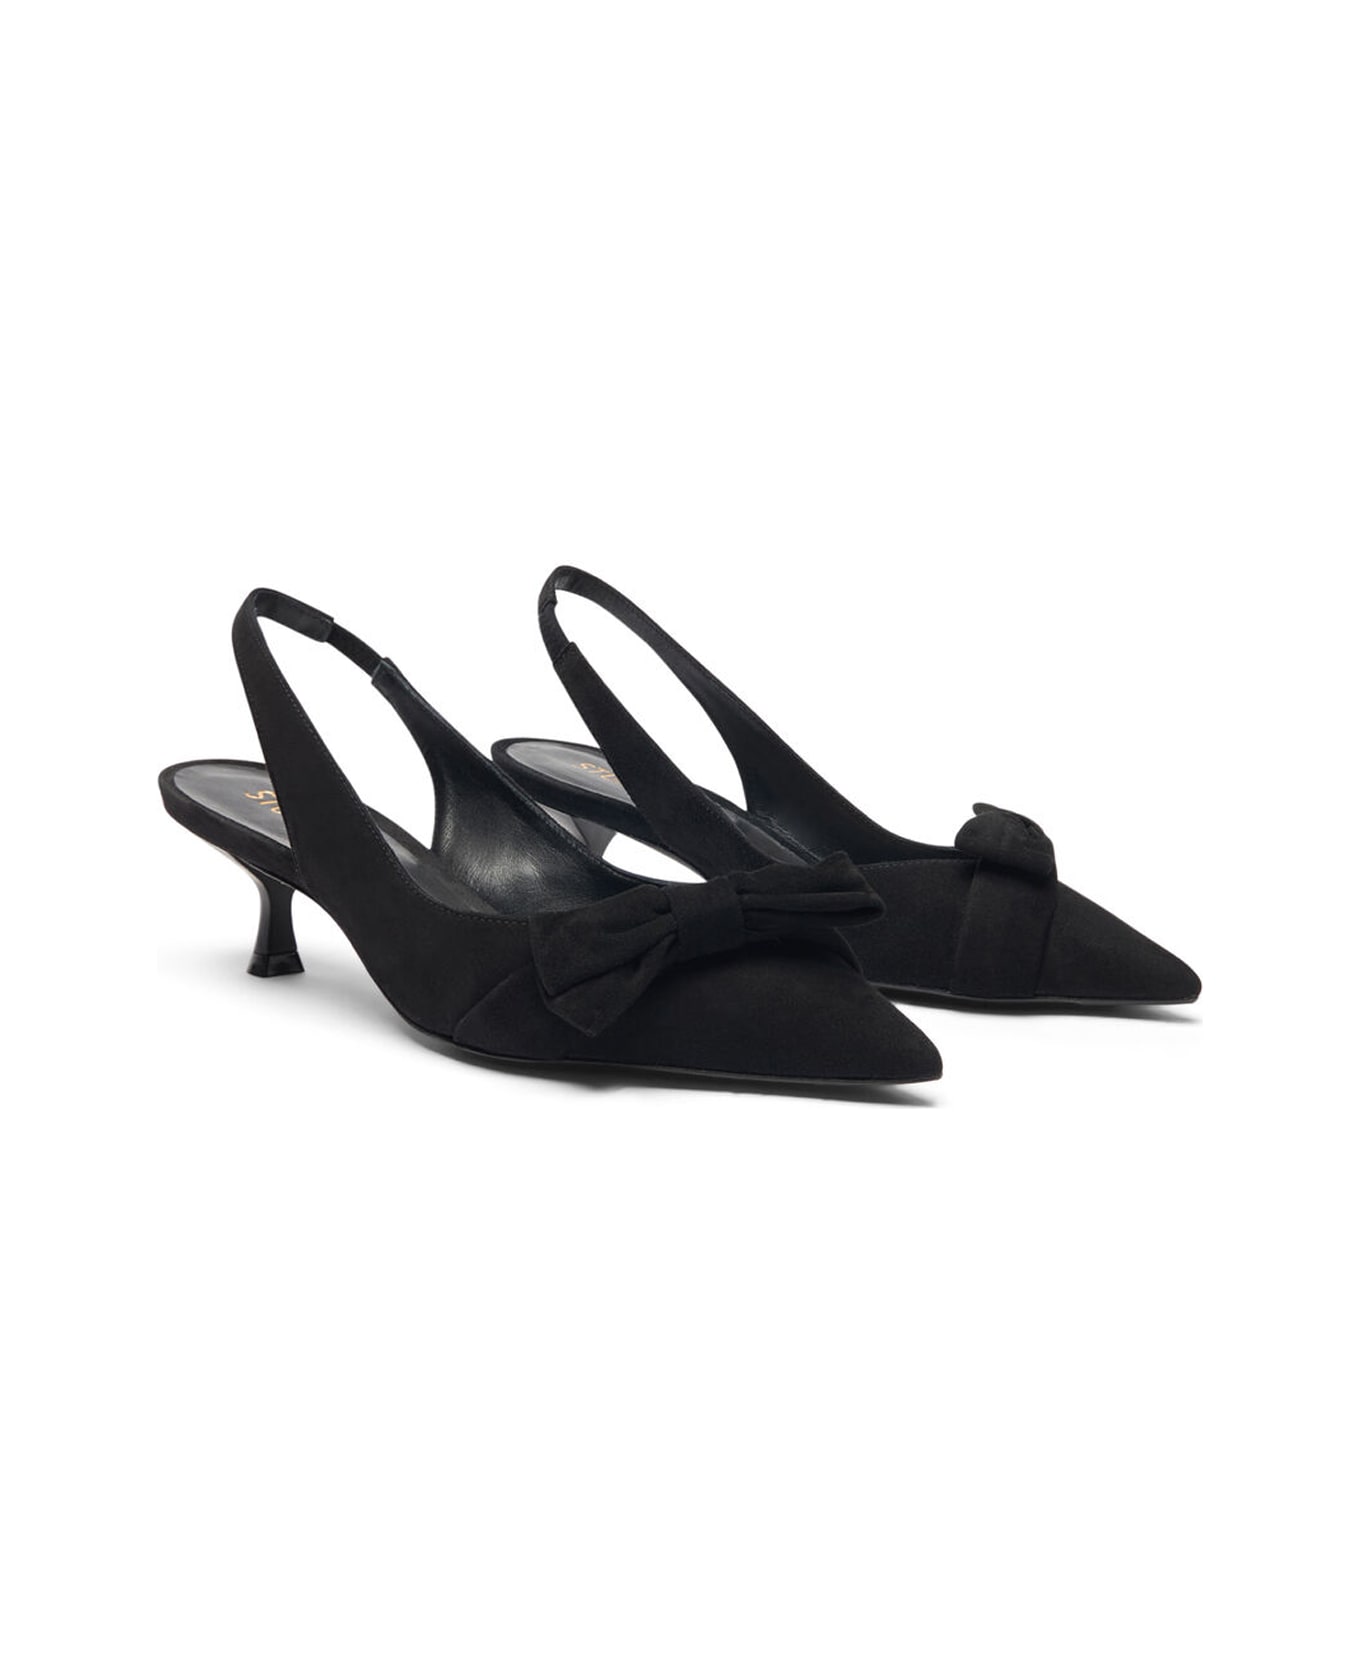 Stuart Weitzman Shoes With Heels - Black ハイヒール